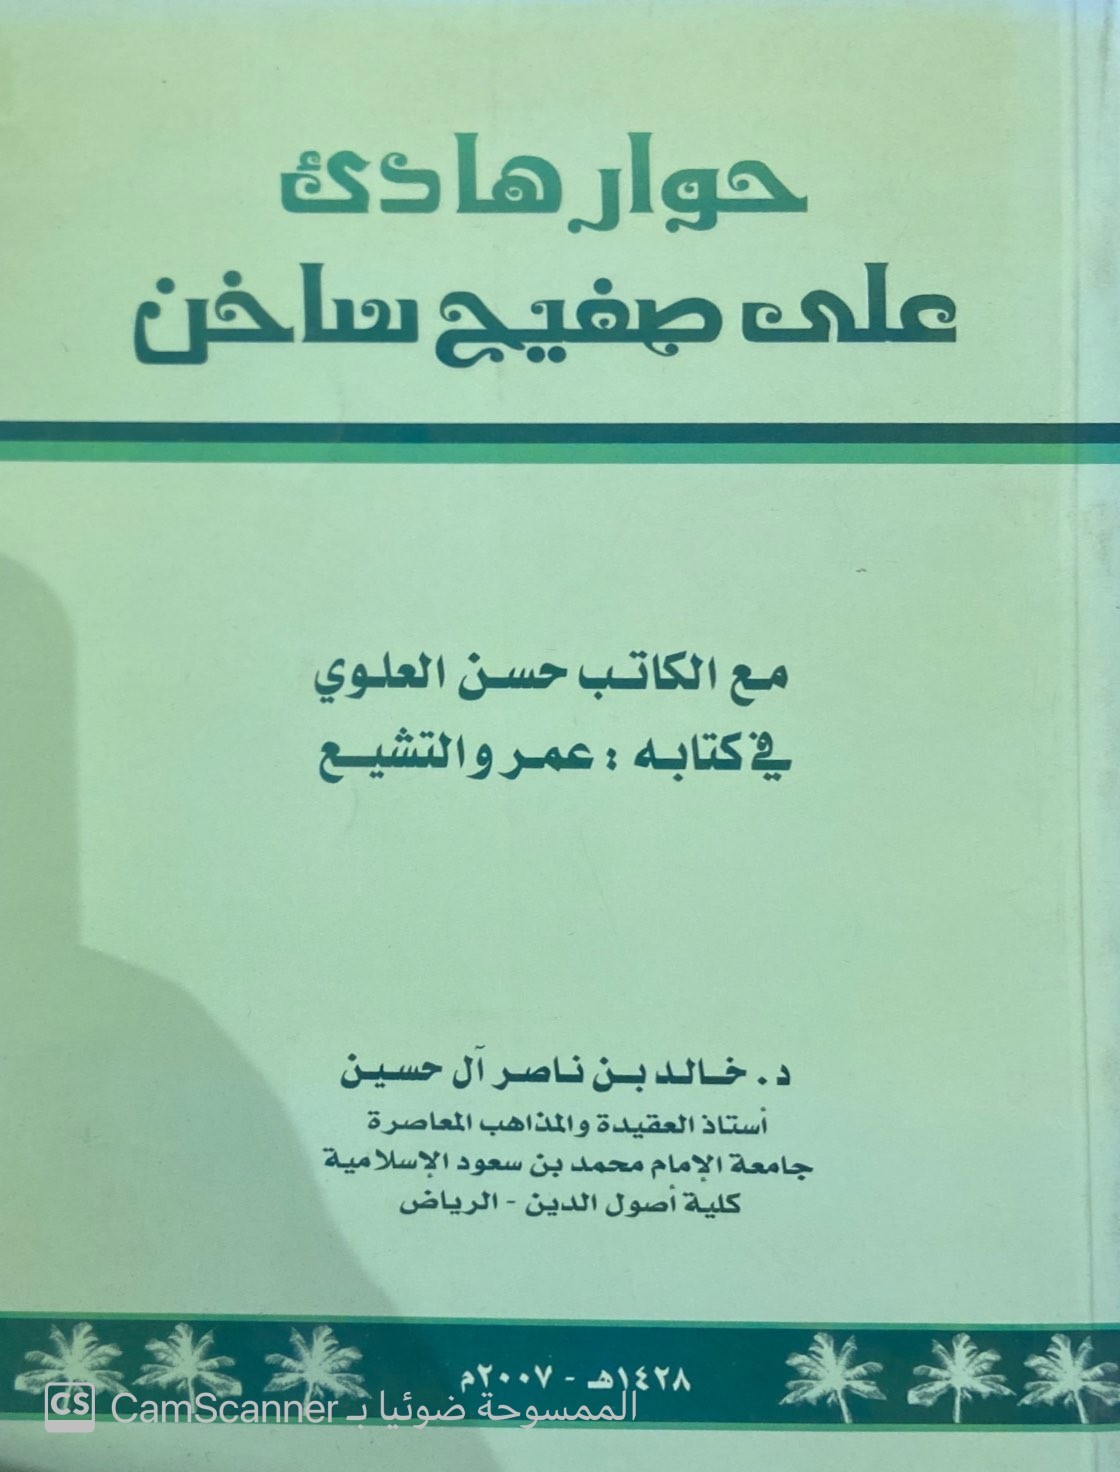 حوار هادئ على صفيح ساخن مع الكاتب حسن العلوي في كتابه عمرو والتشيع